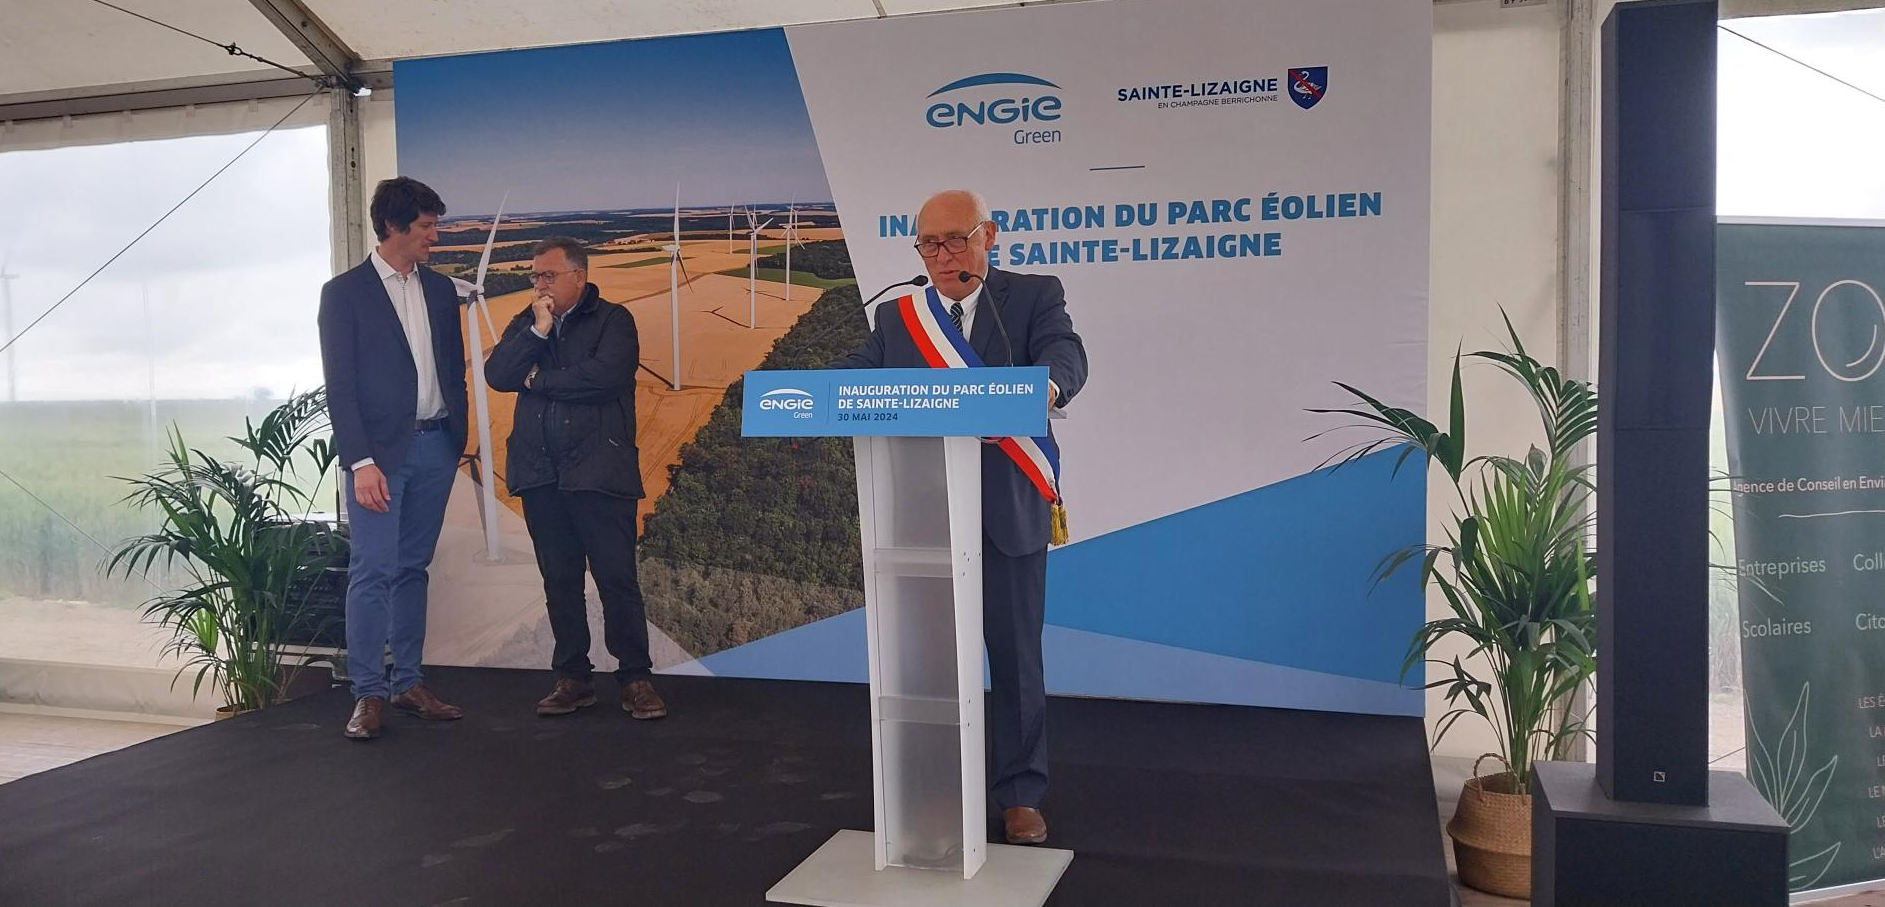 Inauguration du parc éolien de Sainte-Lizaigne dans le département de l’Indre (36)
